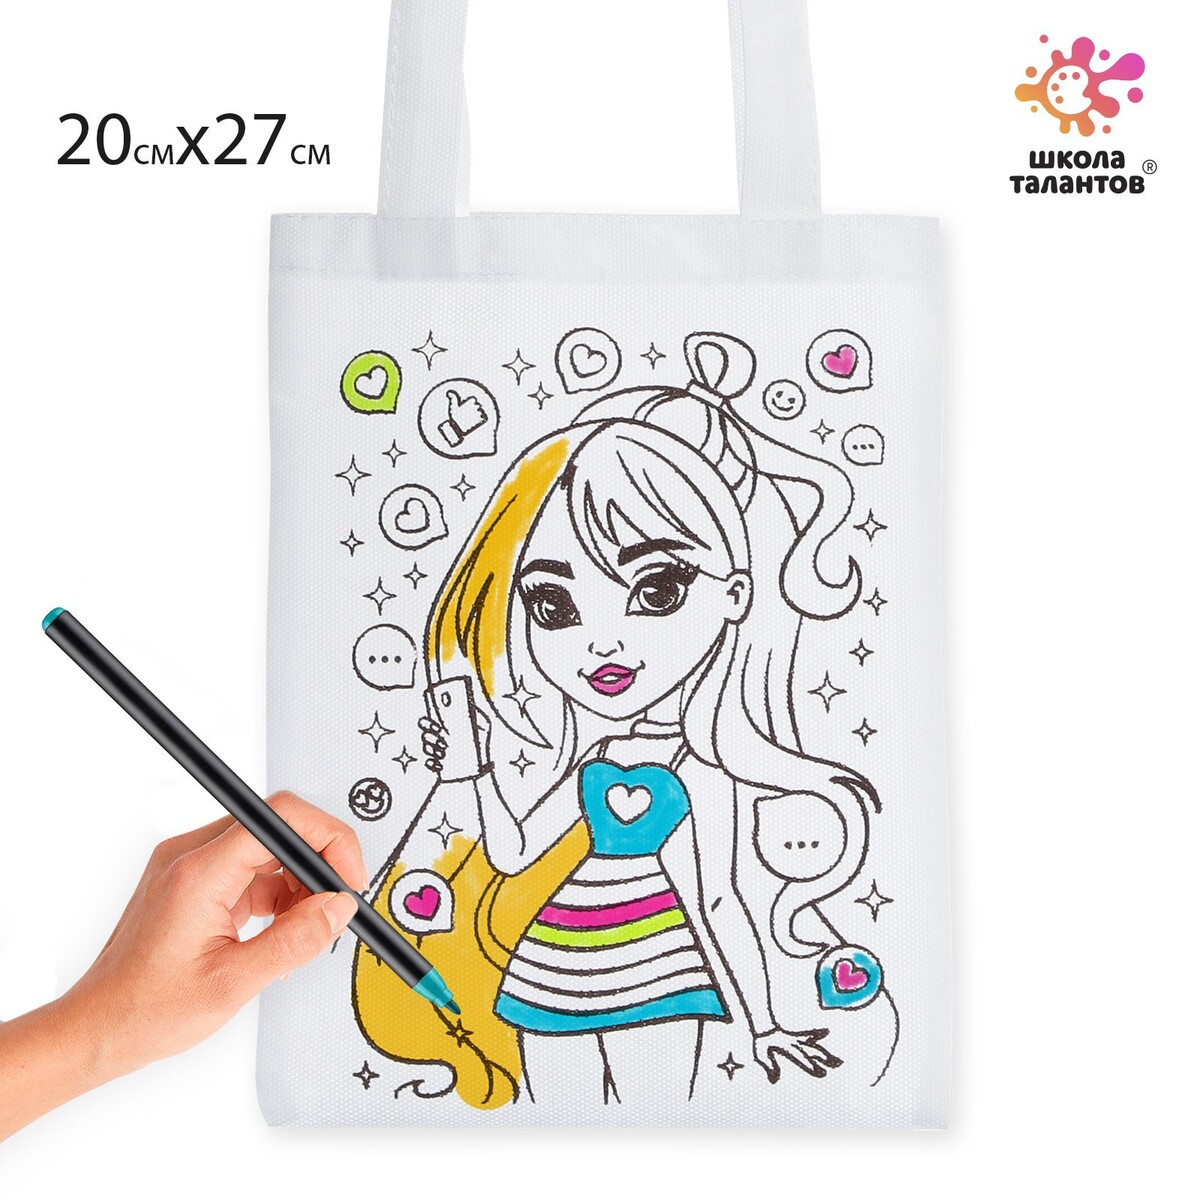 Сумка-шоппер, раскраска Школа талантов 01239779: купить за 220 руб в  интернет магазине с бесплатной доставкой